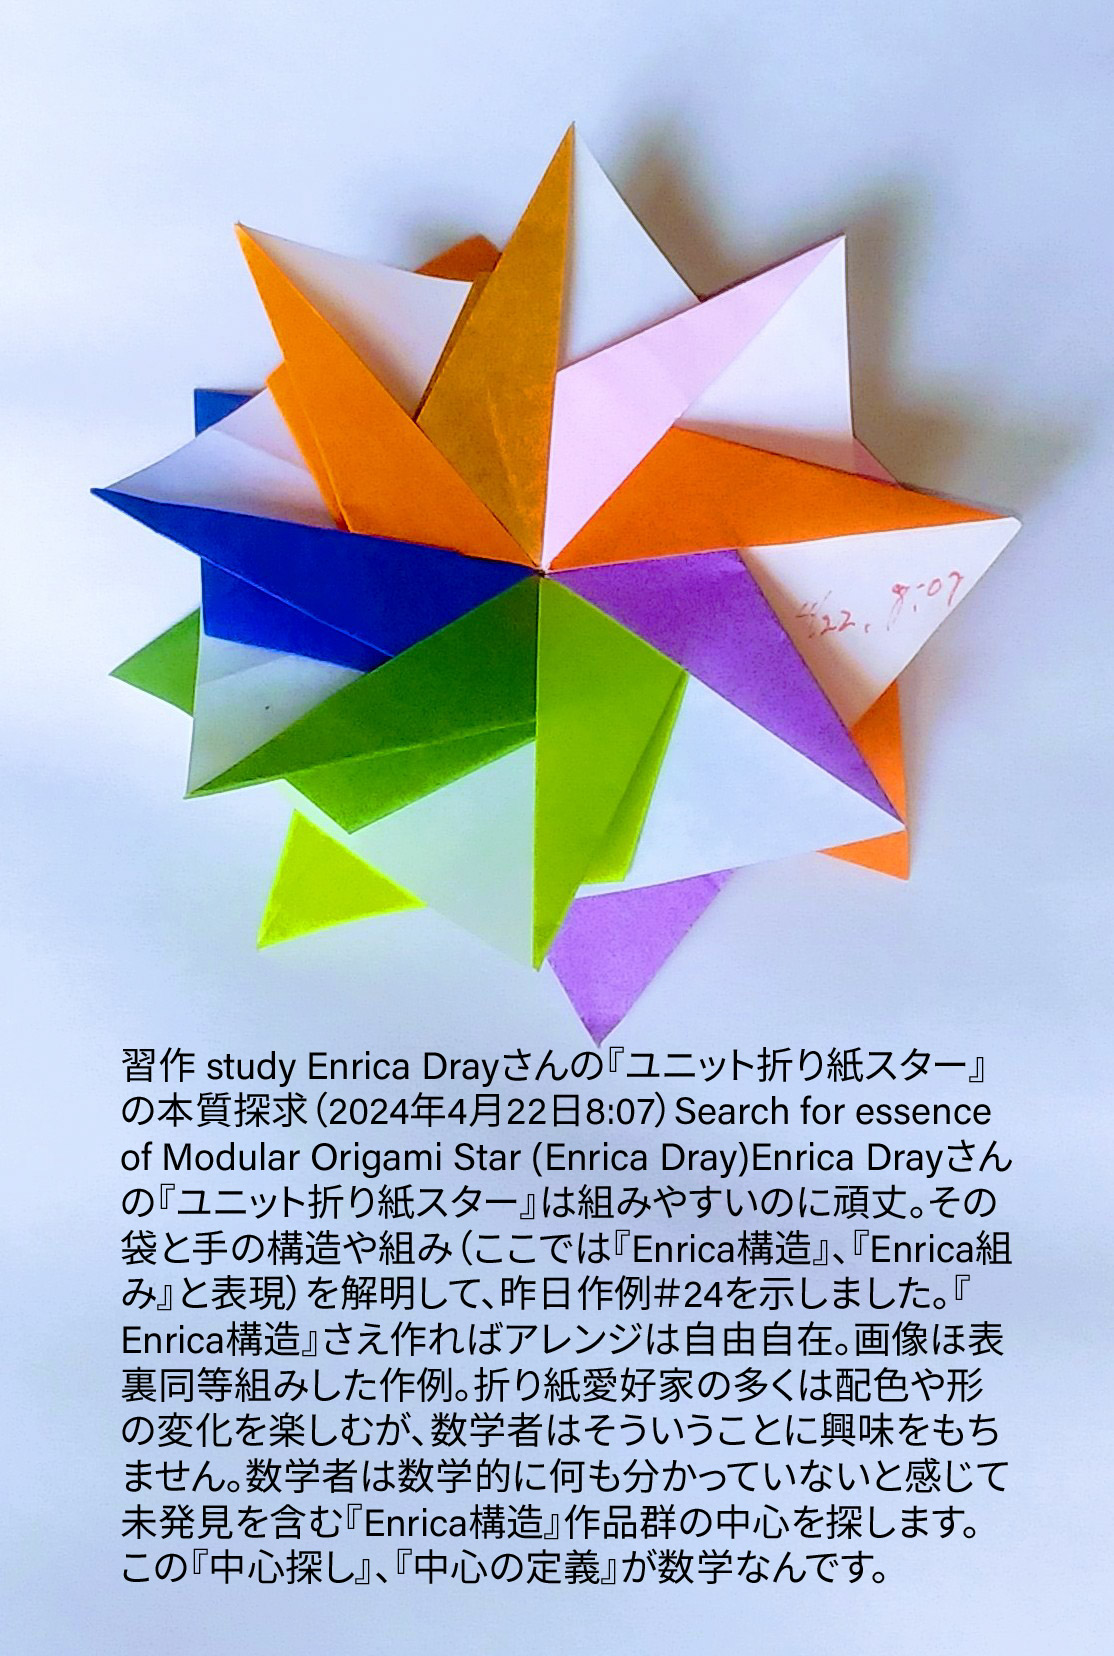 2024/04/22(Mon) 09:09「習作 study Enrica Drayさんの『ユニット折り紙スター』の本質探求（2024年4月22日8:07）Search for essence of Modular Origami Star (Enrica Dray)」川崎敏和 T.Kawasaki
（創作者 Author：川崎敏和 T.Kawasaki,　製作者 Folder：川崎敏和 T.Kawasaki ,　出典 Source：折り図無し no diagrm）
 Enrica Drayさんの『ユニット折り紙スター』は組みやすいのに頑丈。その袋と手の構造や組み（ここでは『Enrica構造』、『Enrica組み』と表現）を解明して、昨日作例＃24を示しました。『Enrica構造』さえ作ればアレンジは自由自在。画像ほ表裏同等組みした作例。折り紙愛好家の多くは配色や形の変化を楽しむが、数学者はそういうことに興味をもちません。数学者は数学的に何も分かっていないと感じて未発見を含む『Enrica構造』作品群の中心を探します。この『中心探し』、『中心の定義』が数学なんです。